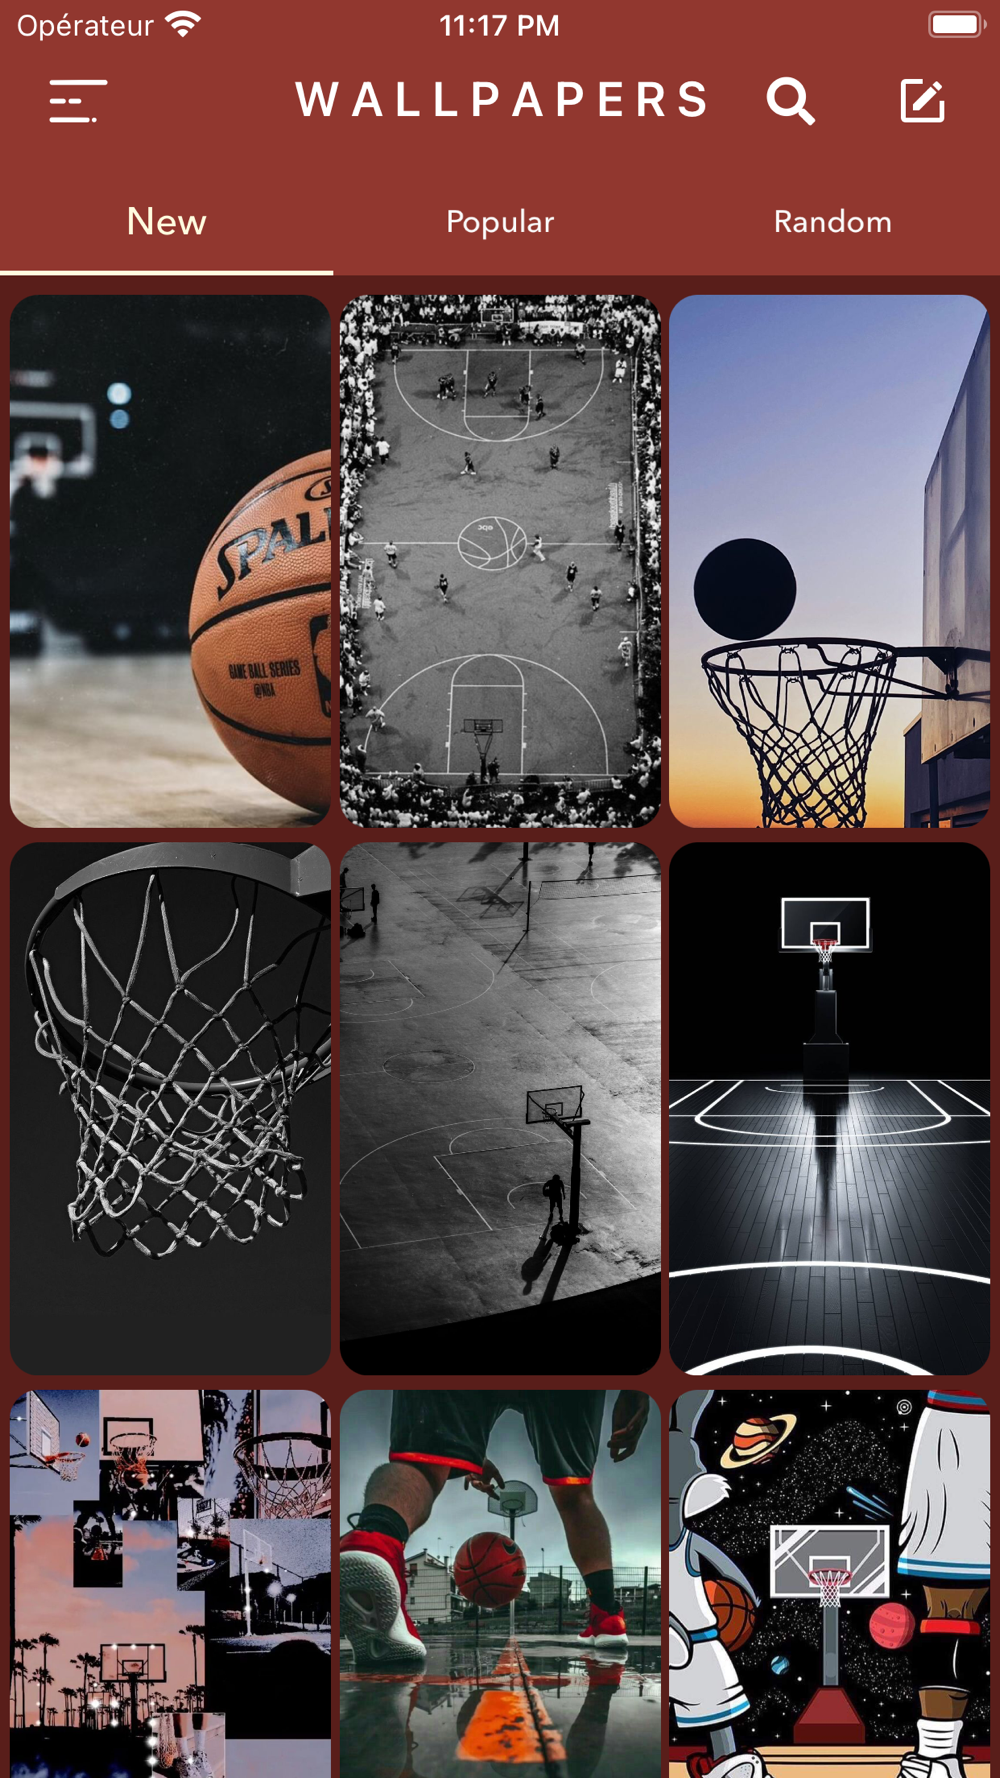 Basketball Wallpaper Images  Free Download on Freepik